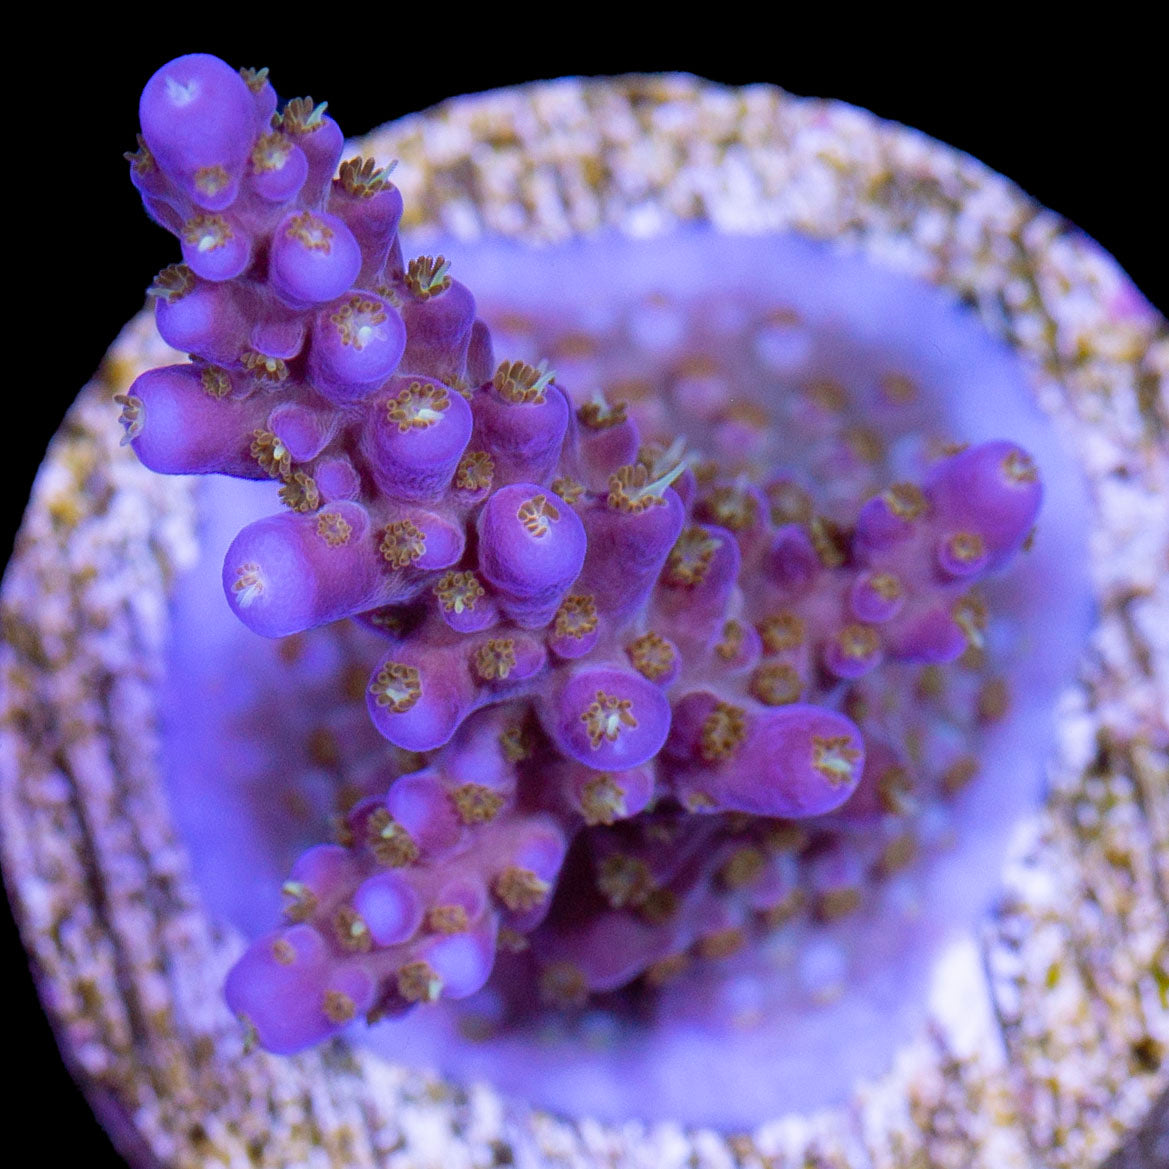 Merlin's Wizard Acropora Coral